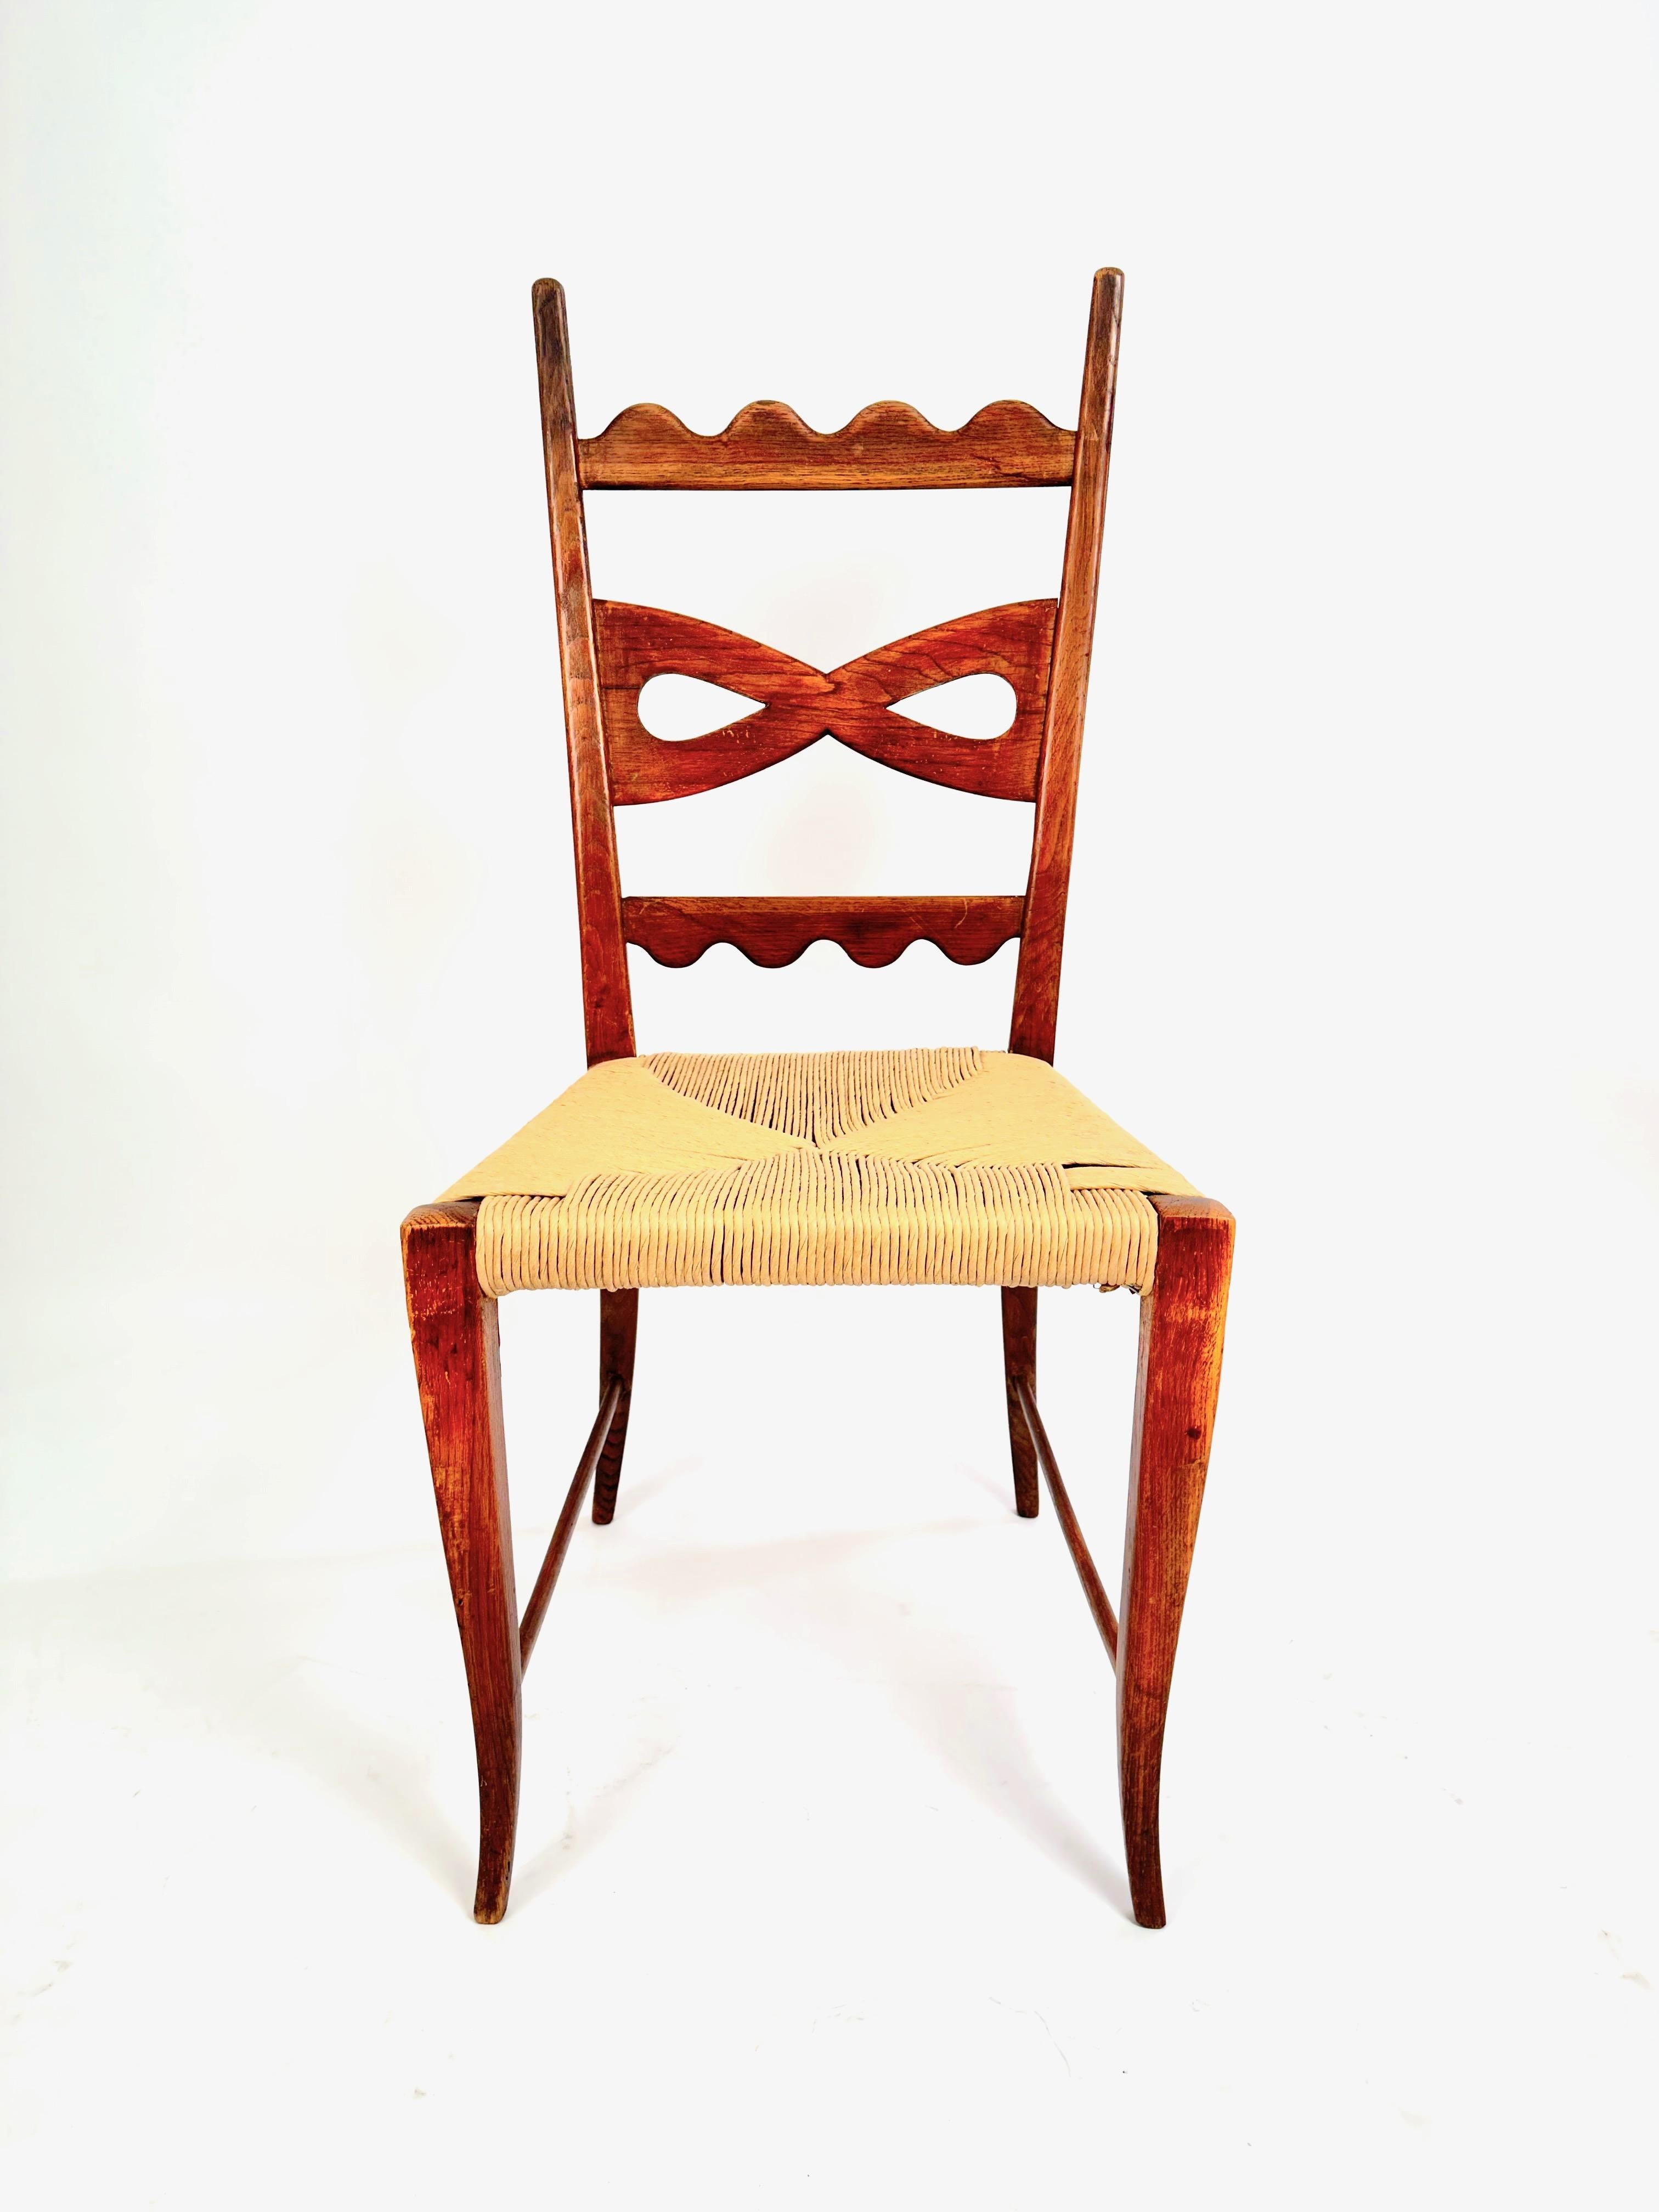 Un rare ensemble de six chaises de salle à manger, conçu par Paolo Buffa dans les années 1940.Détails typiques de l'artisanat Buffa, y compris les motifs décoratifs en forme d'arc et festonnés sur les dossiers, le motif en anneau sculpté sur les